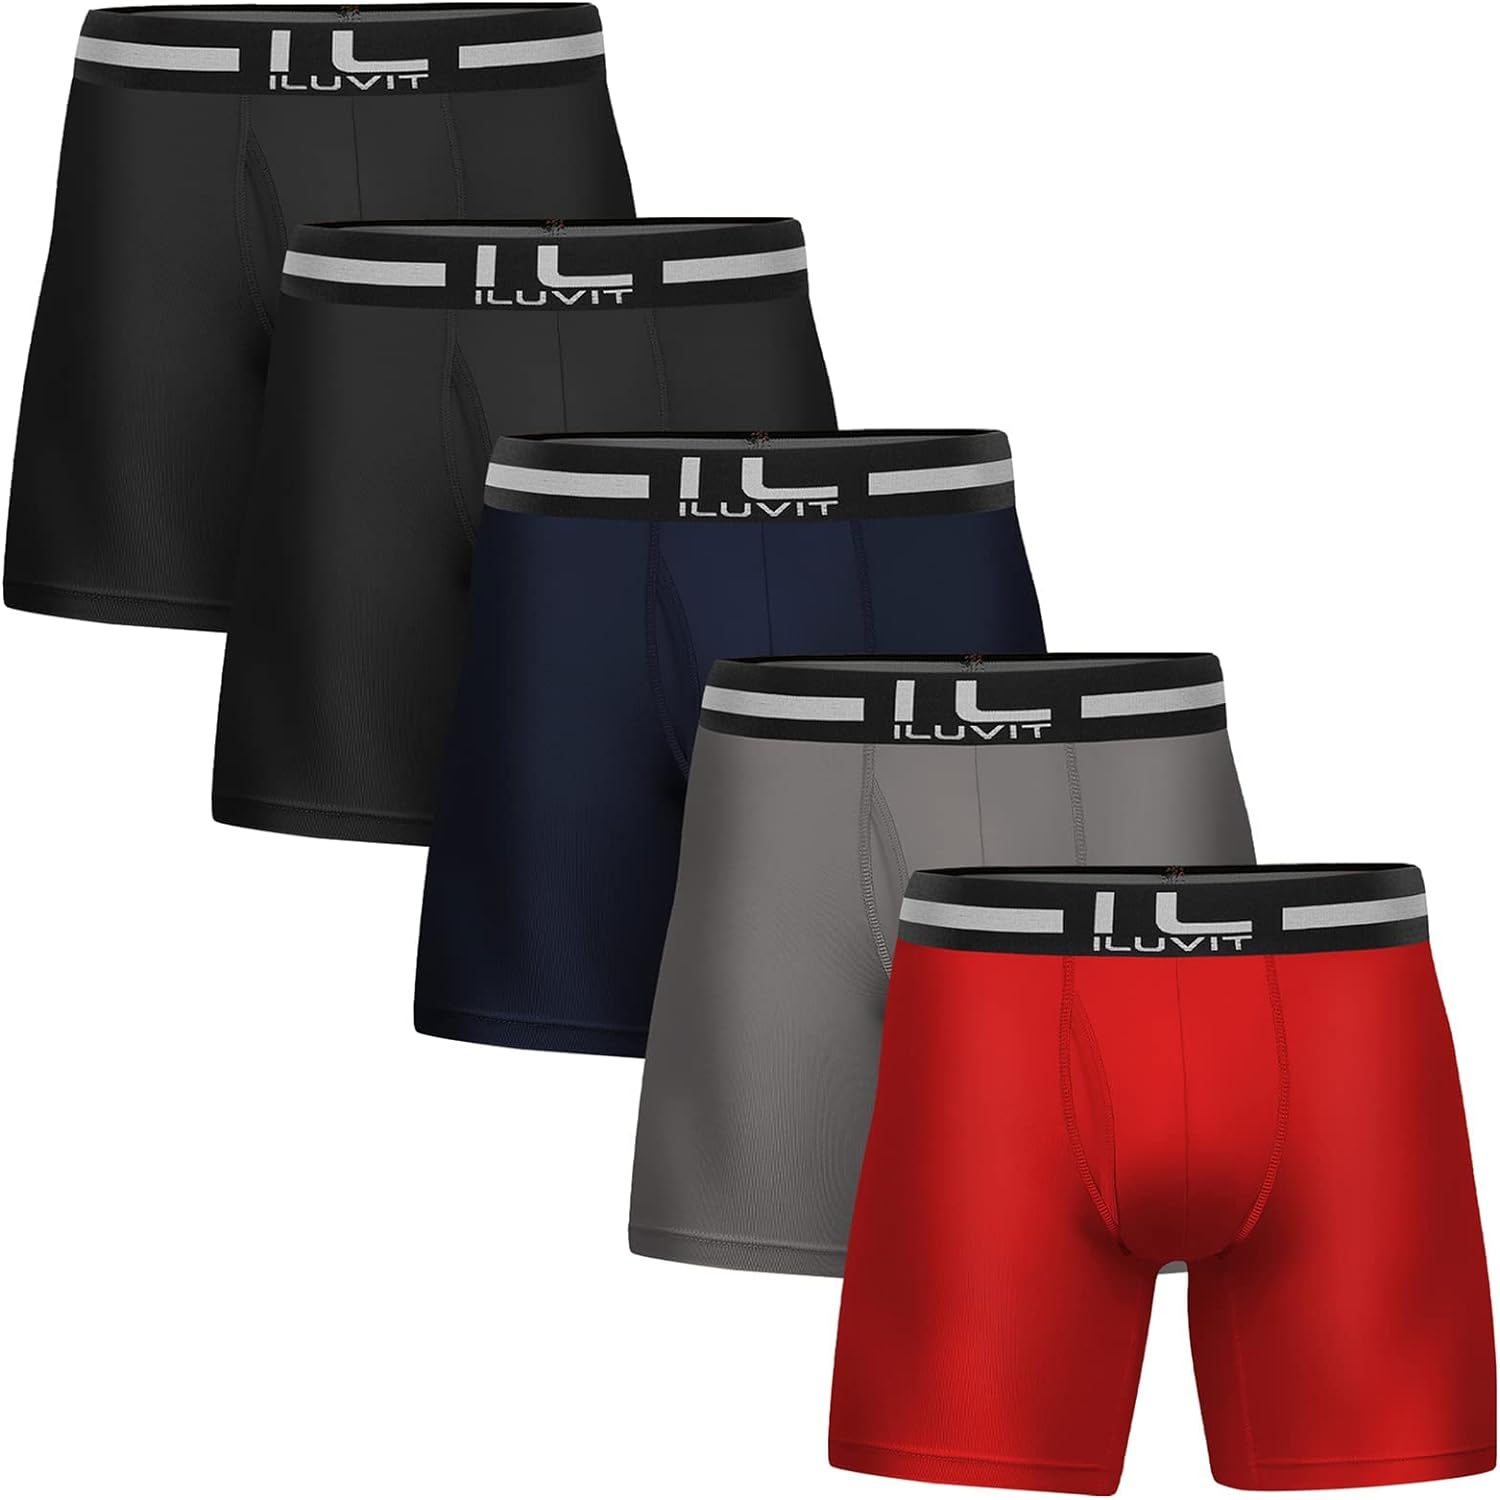 5Mayi Mens Athletic Underwear Mens Boxer Briefs Underwear for Men